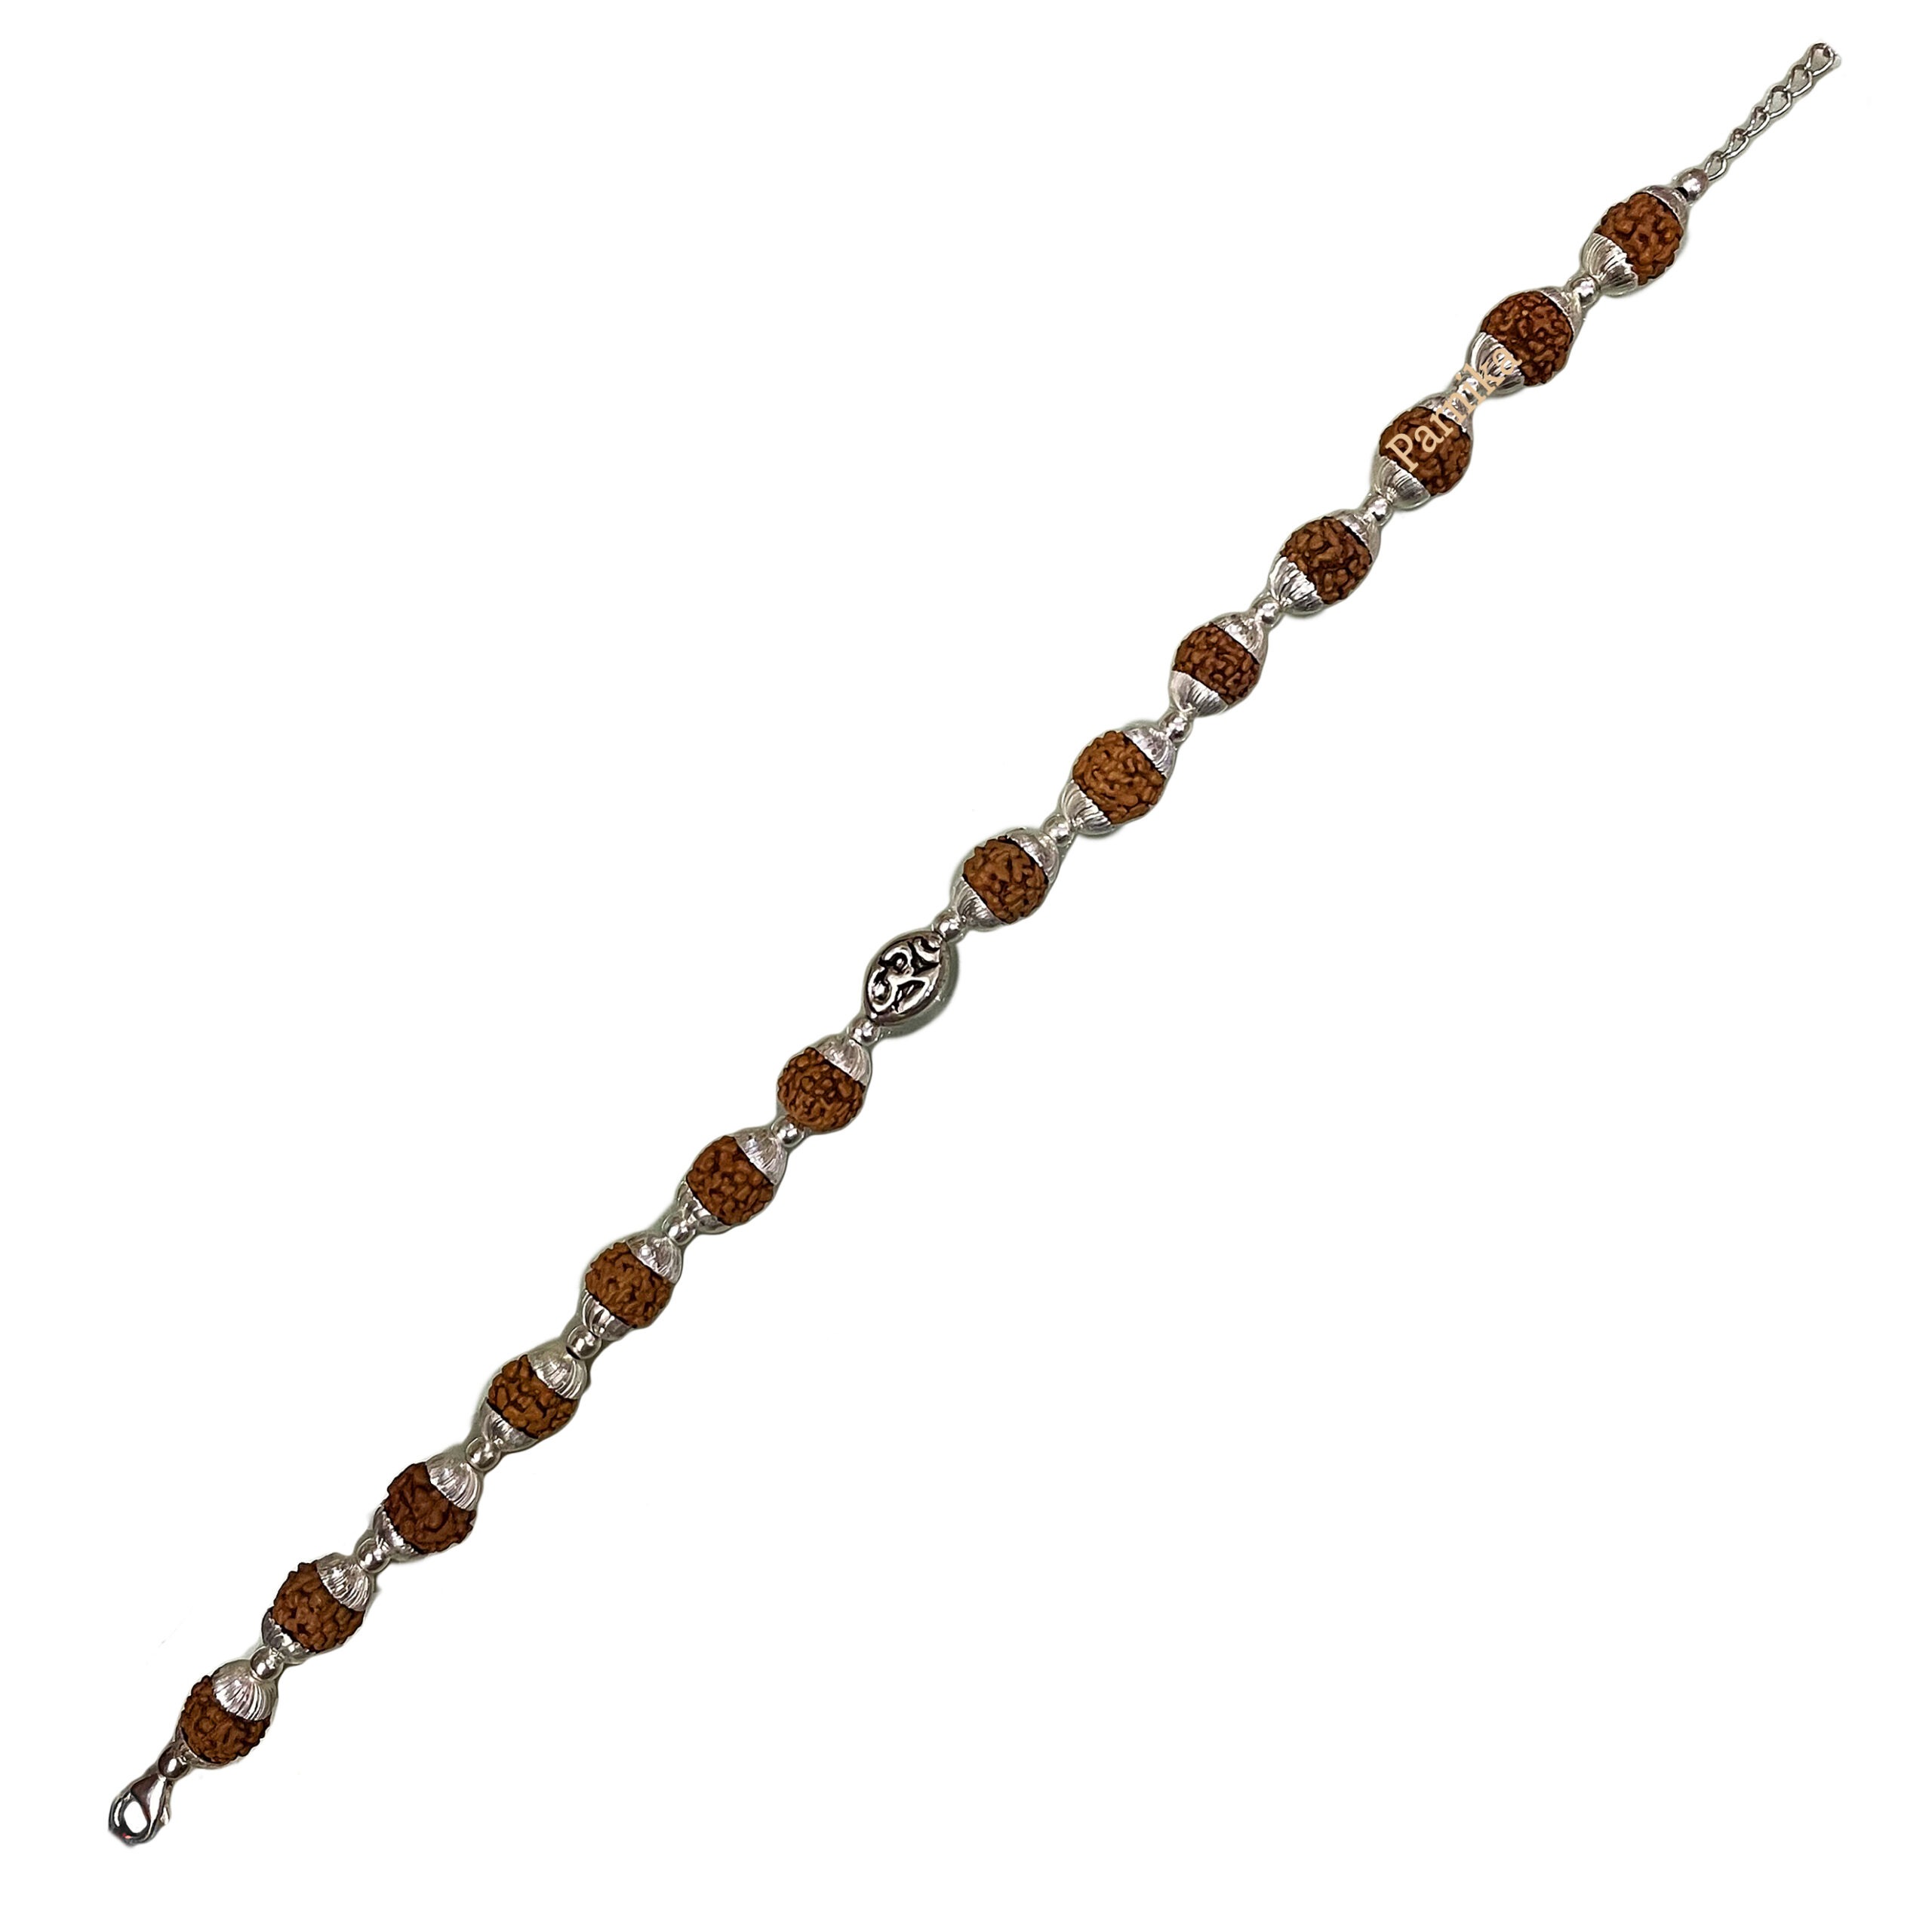 Rudraksha Combination Protection Bracelet Buy Online at Rudraksha -Gemstones.com